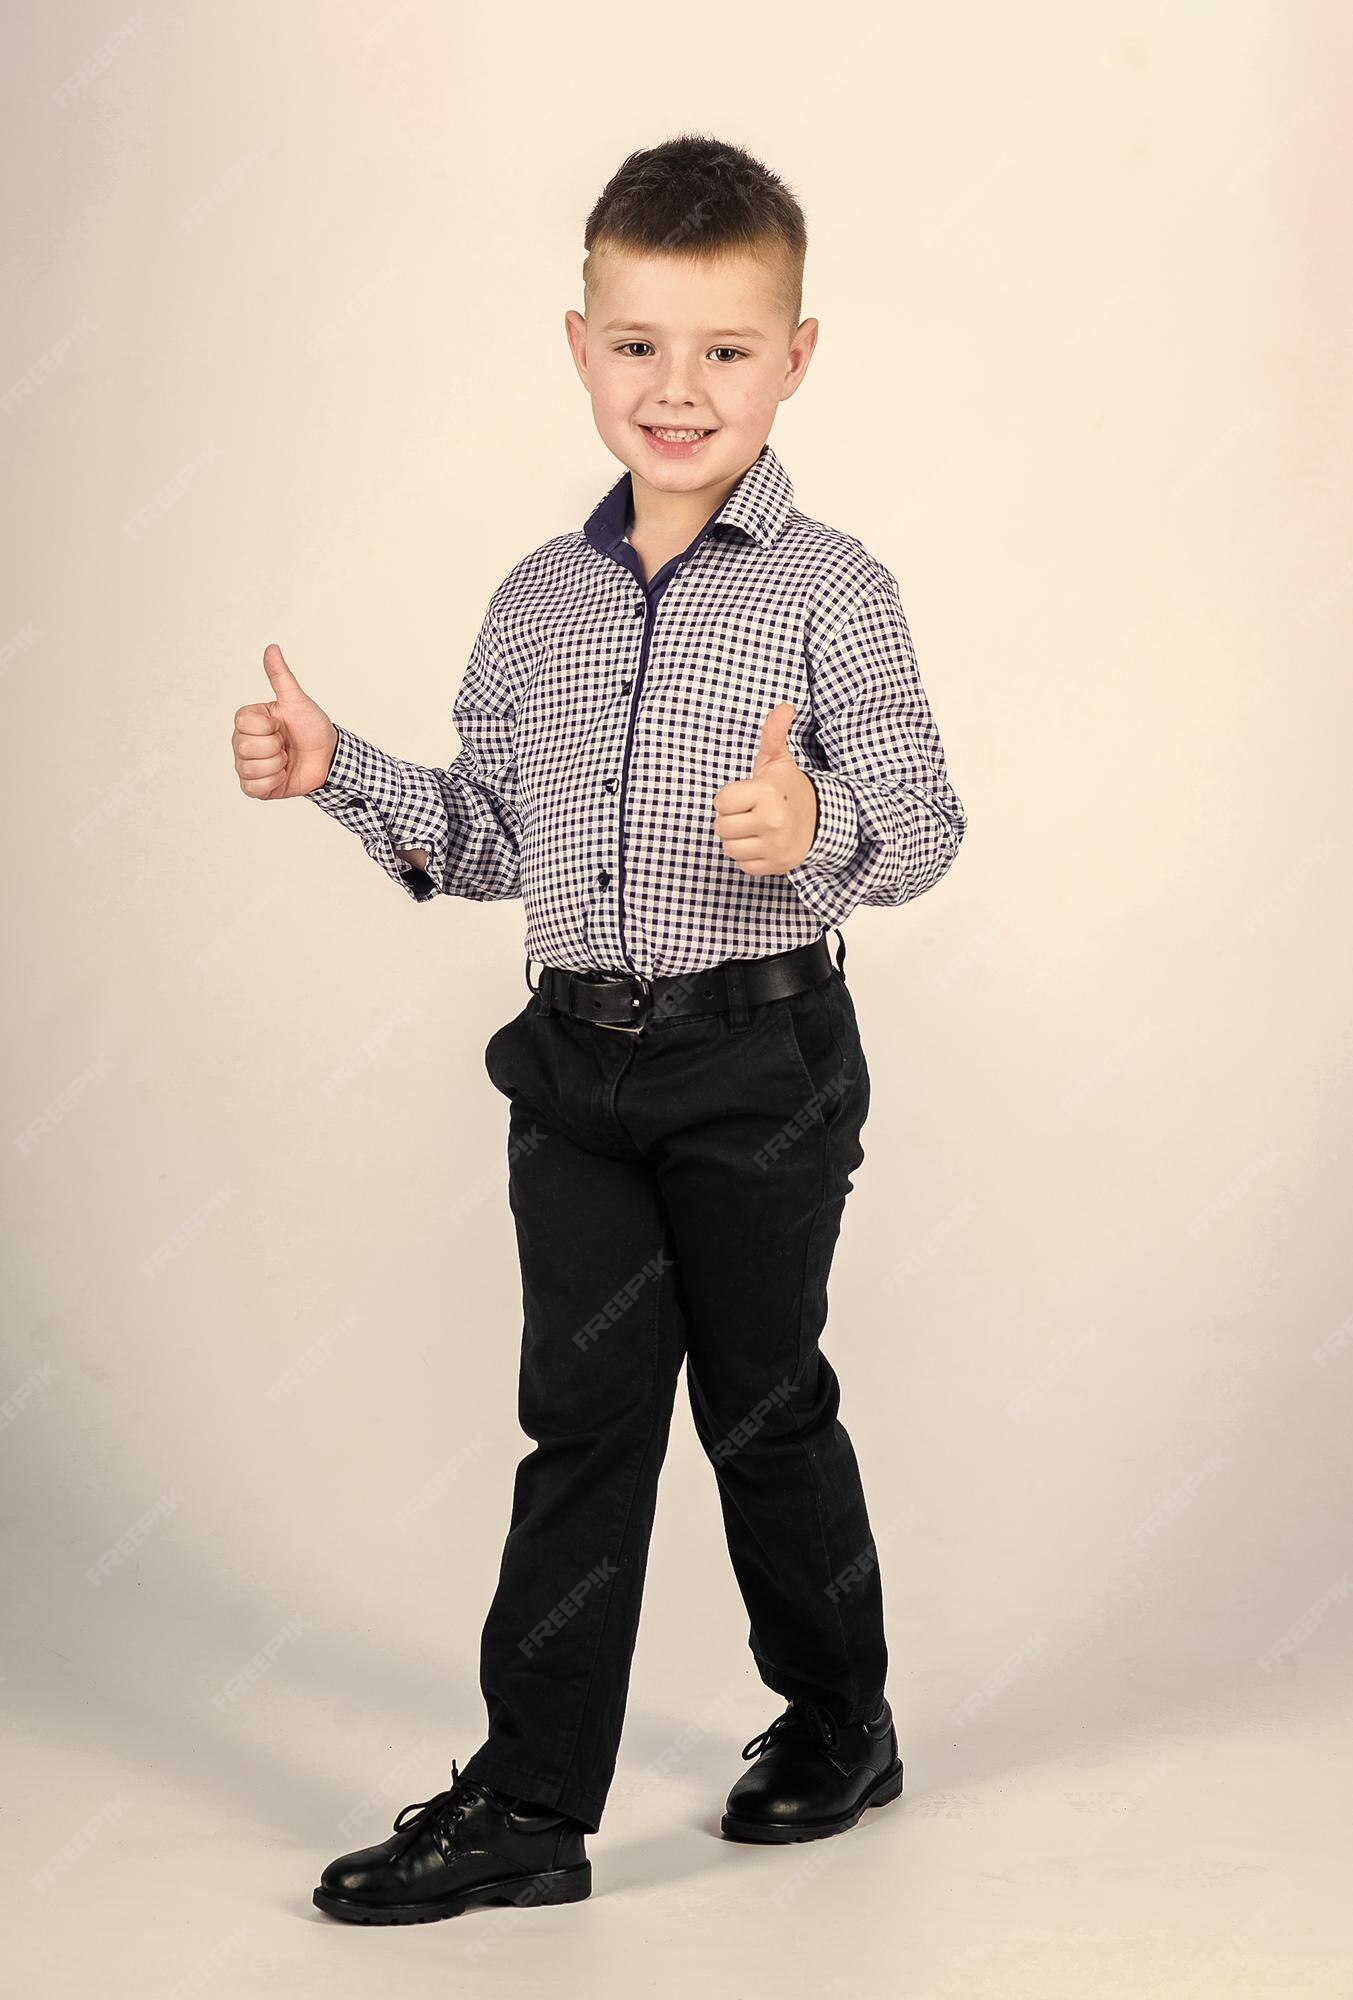 Moda infantil empresario escuela de negocios educación y desarrollo niño confiado niño pequeño usa ropa niño lindo traje de evento serio estilo impecable infancia feliz | Foto Premium